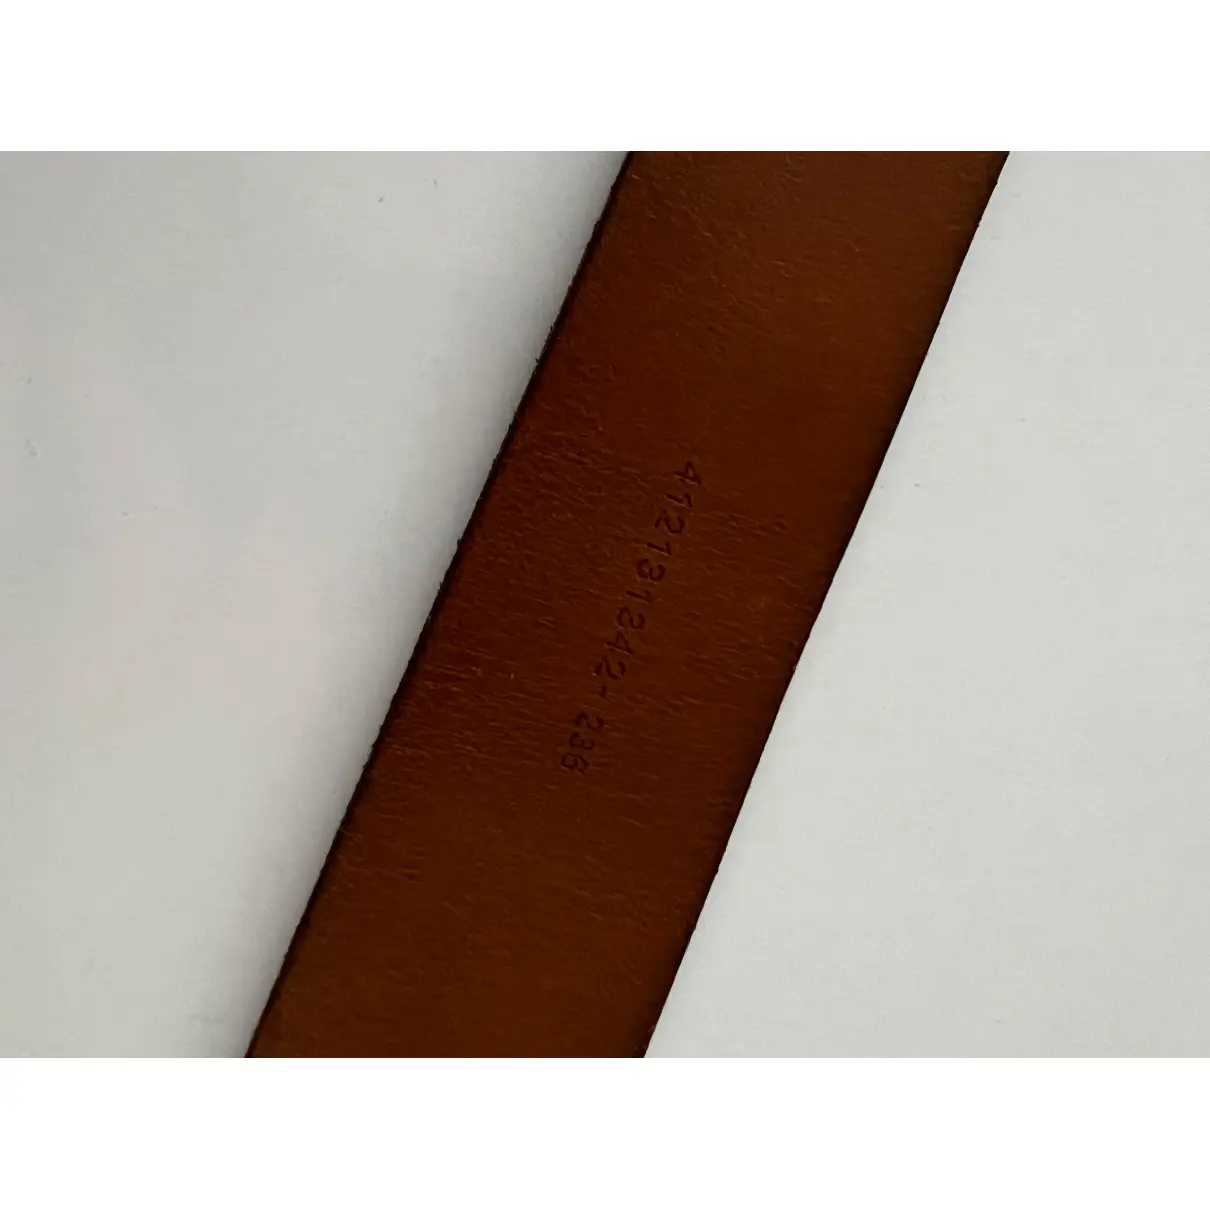 Leather belt Ralph Lauren